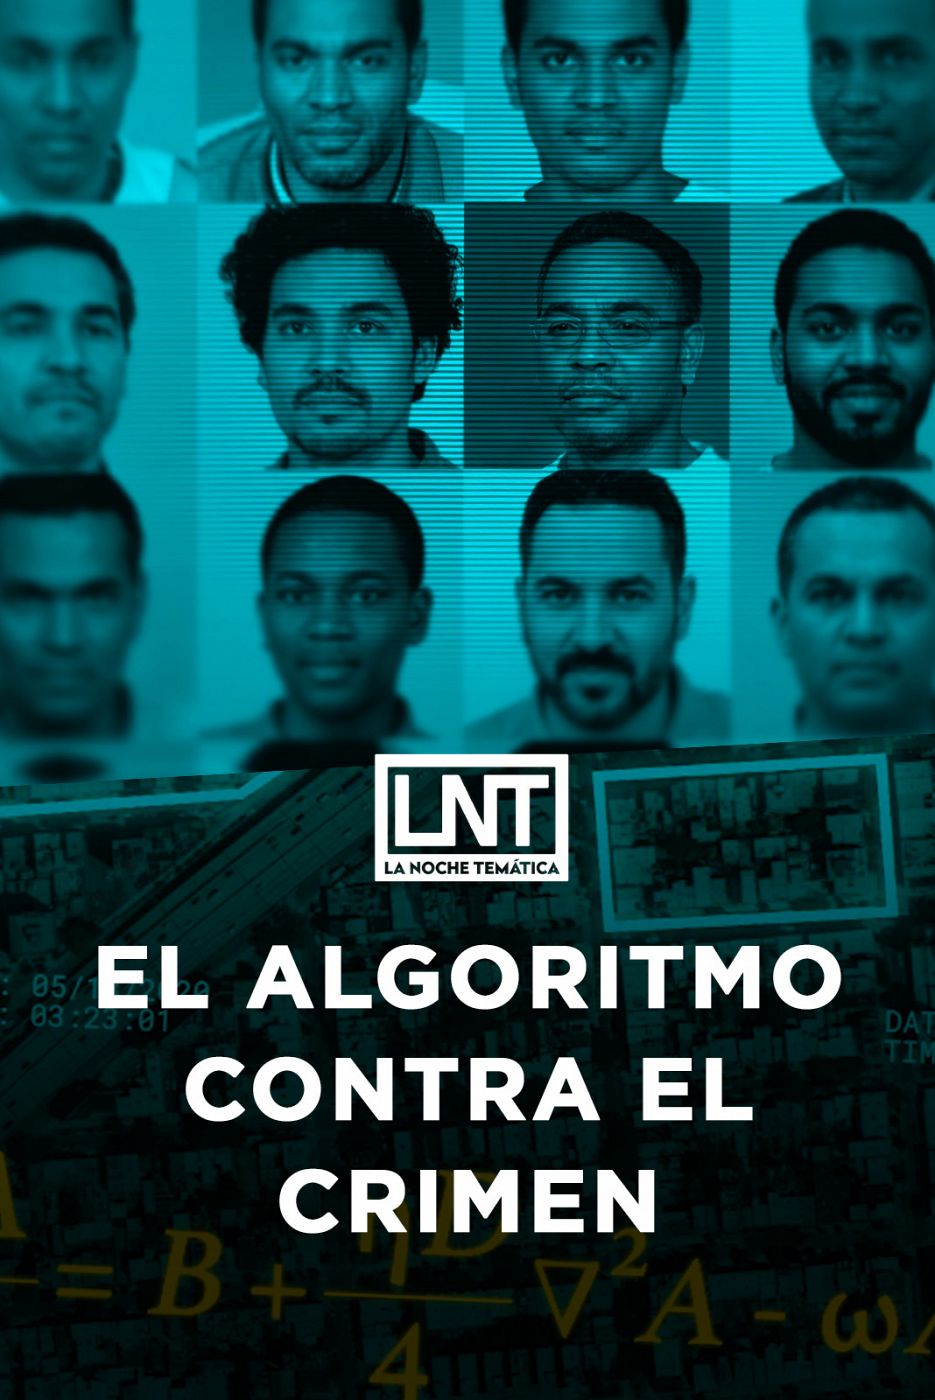 La noche temática - El algoritmo contra el crimen - Documental en RTVE